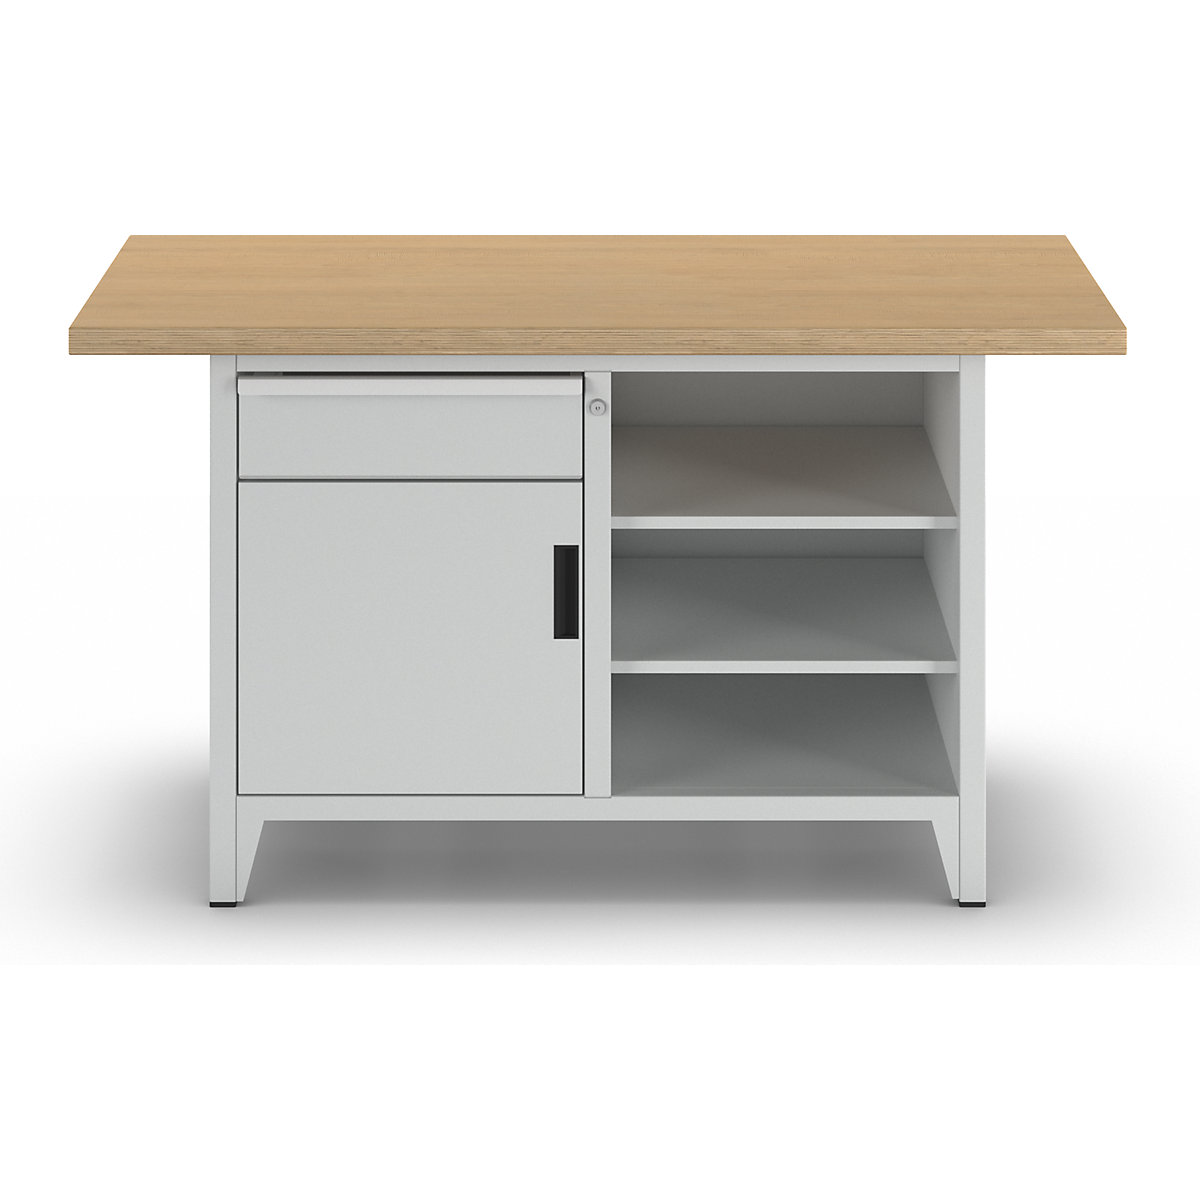 Stół warsztatowy, szerokość 1500 mm, konstrukcja ramowa – LISTA (Zdjęcie produktu 6)-5